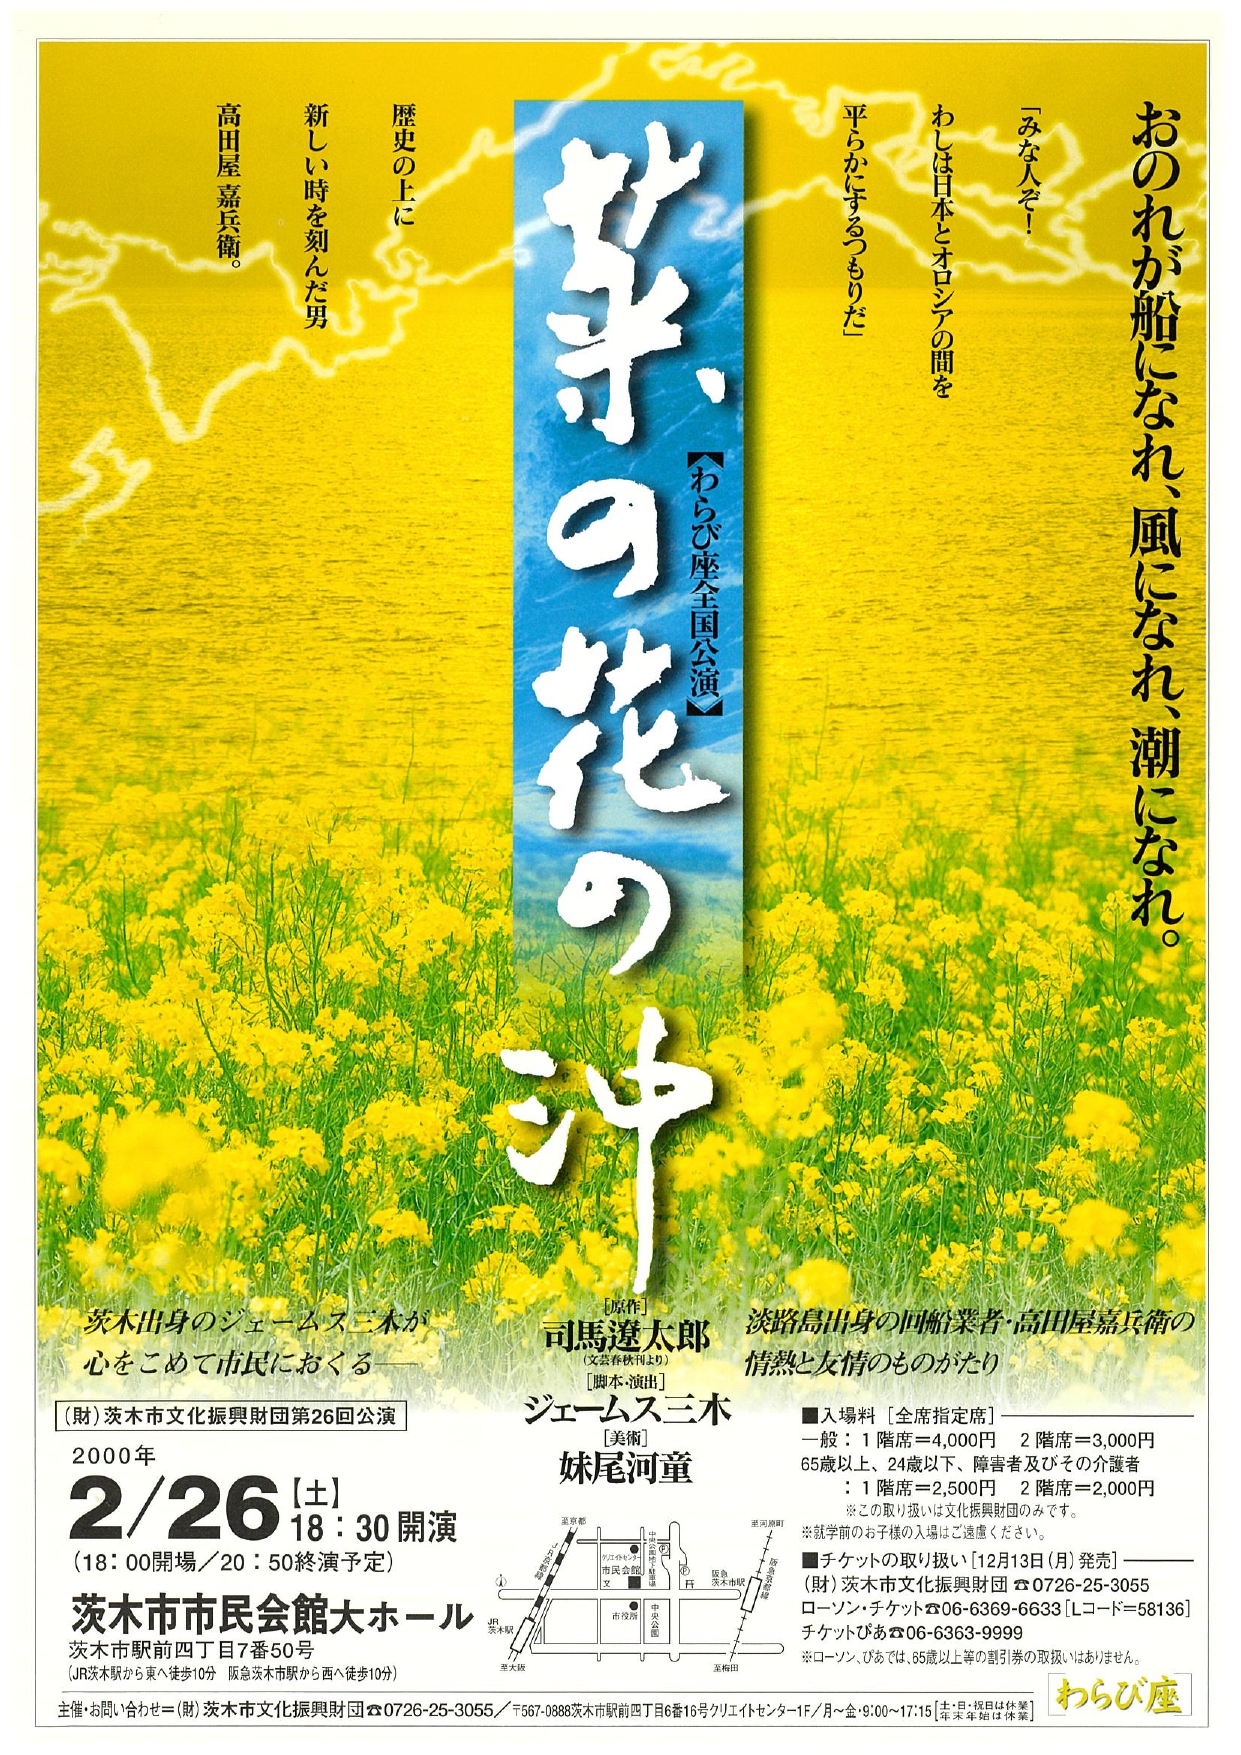 わらび座公演 「菜の花の沖」 | 茨木市文化振興財団